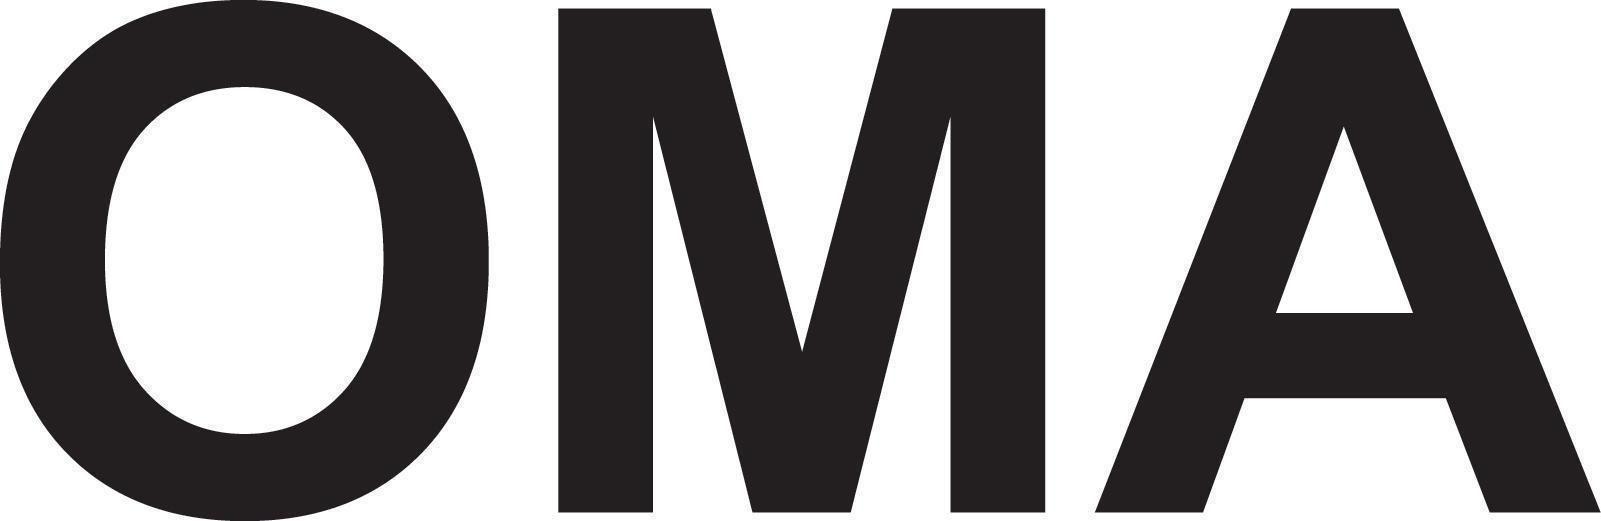 Oma Logo - Office for Metropolitan Architecture Competitors, Revenue